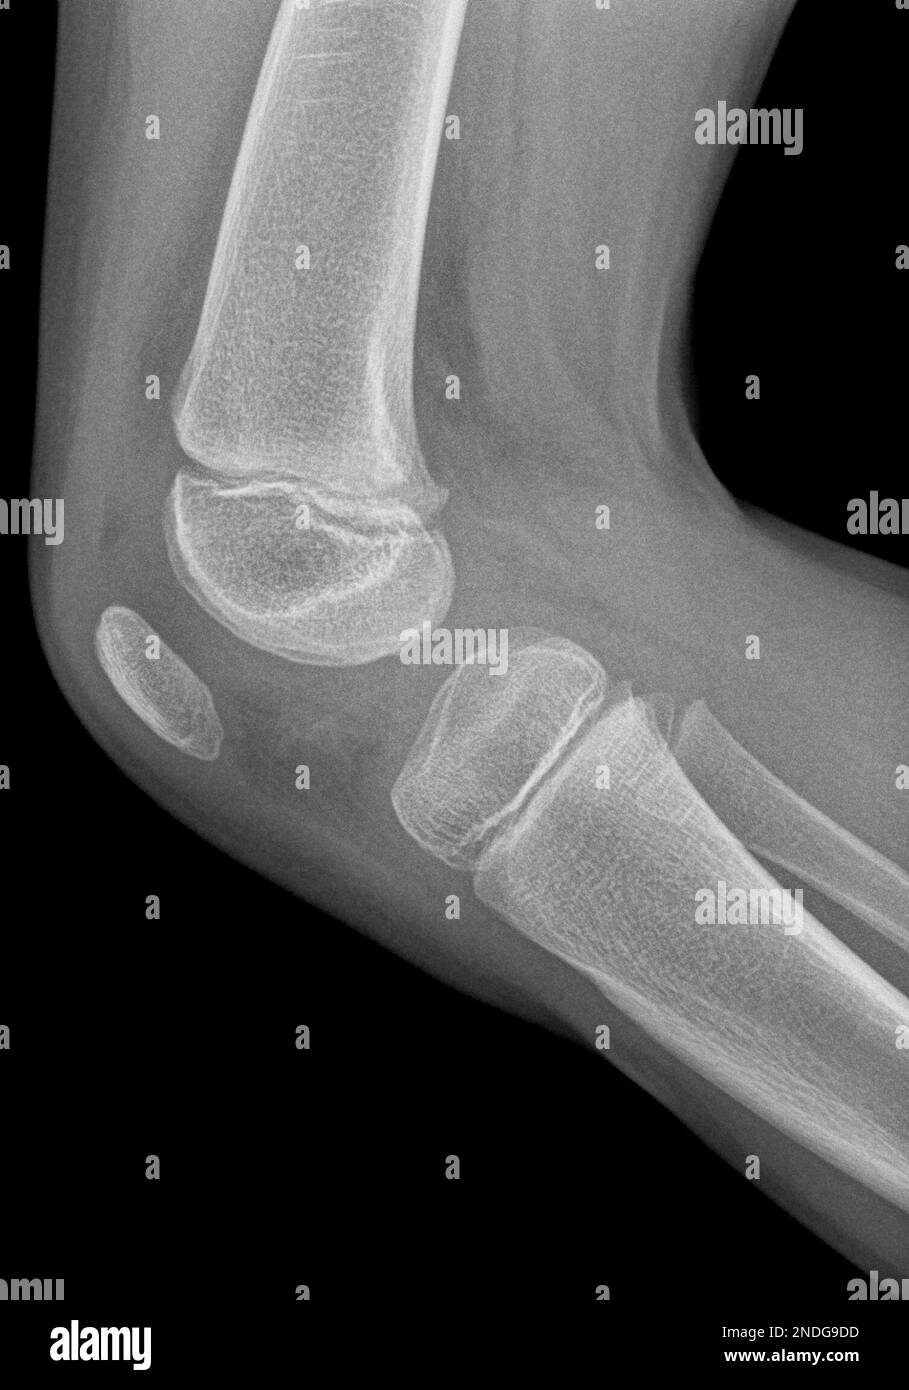 Image radiographique d'un genou en projection latérale d'une jeune fille de cinq ans. Un petit œdème est présent, indiquant une inflammation possible. Banque D'Images